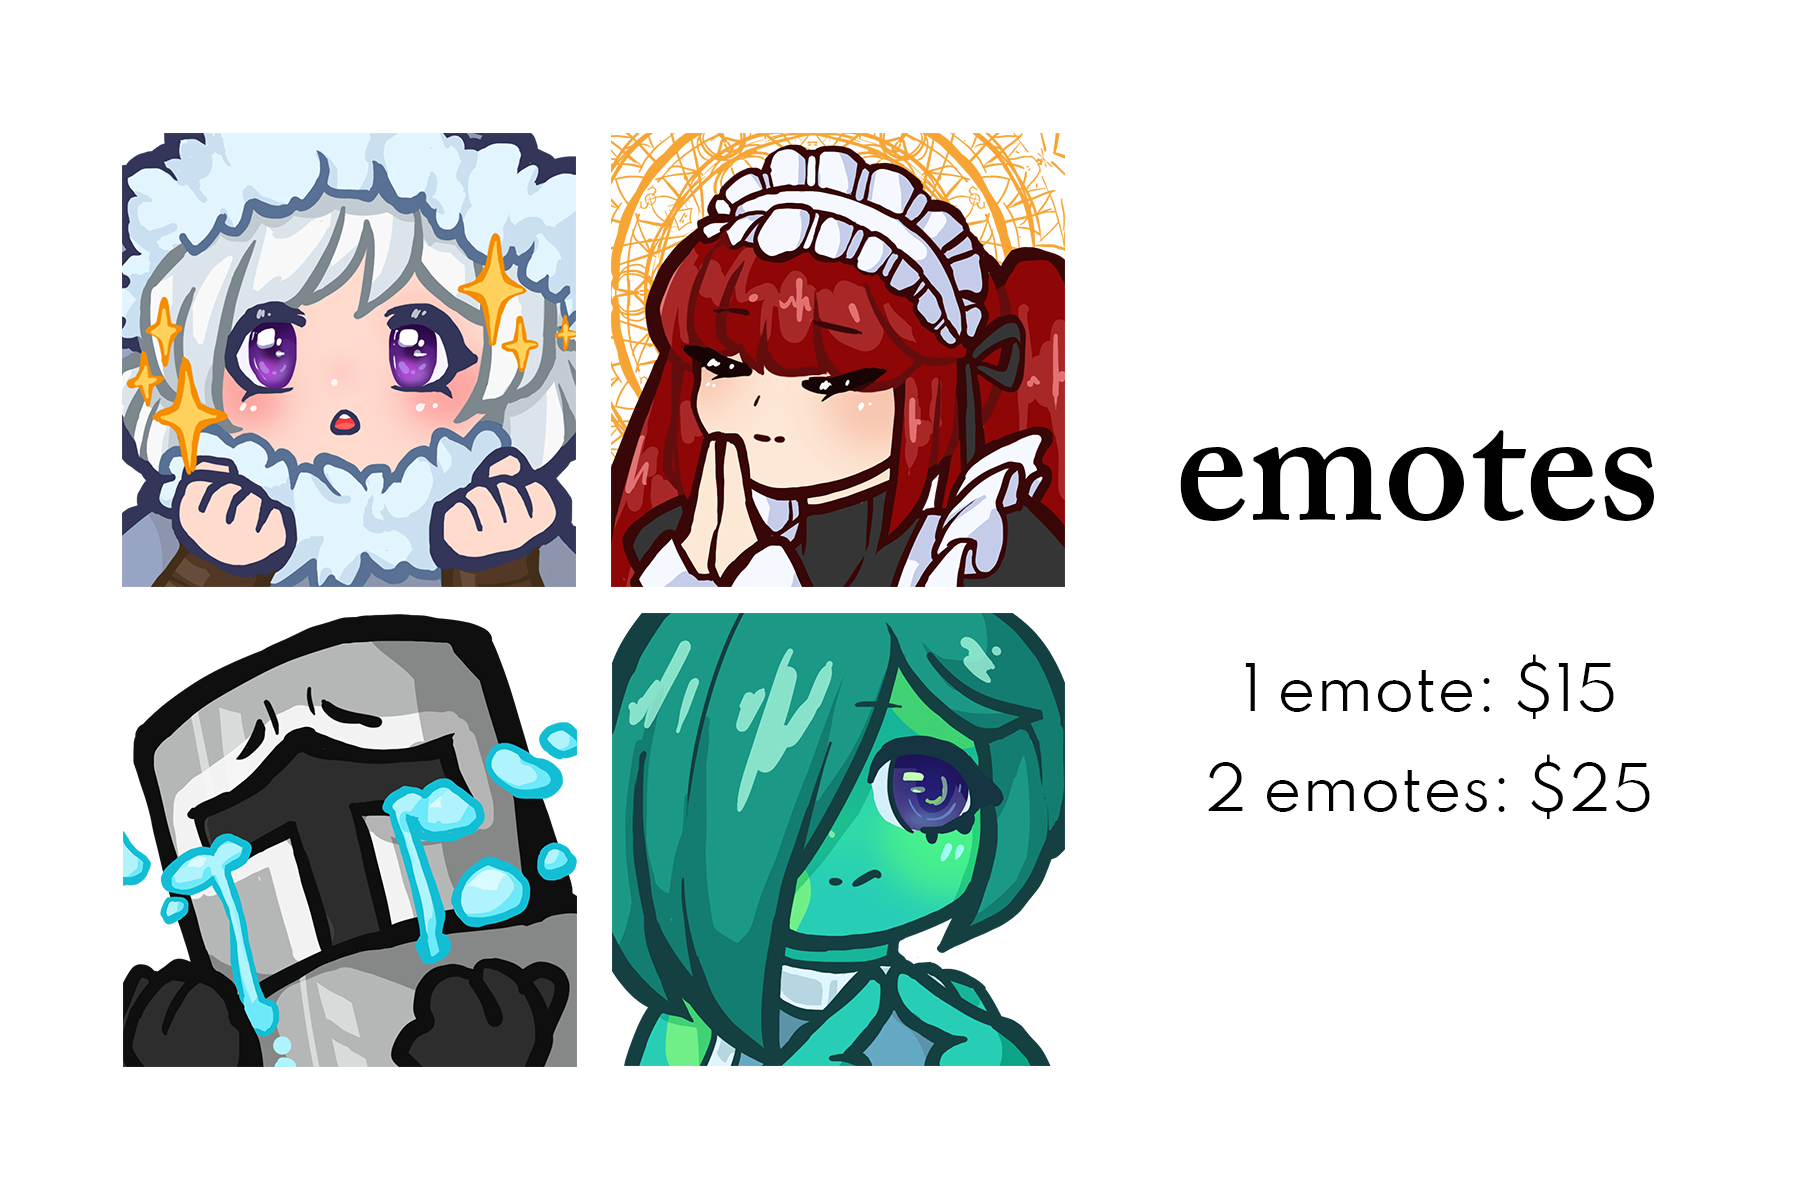 emotes